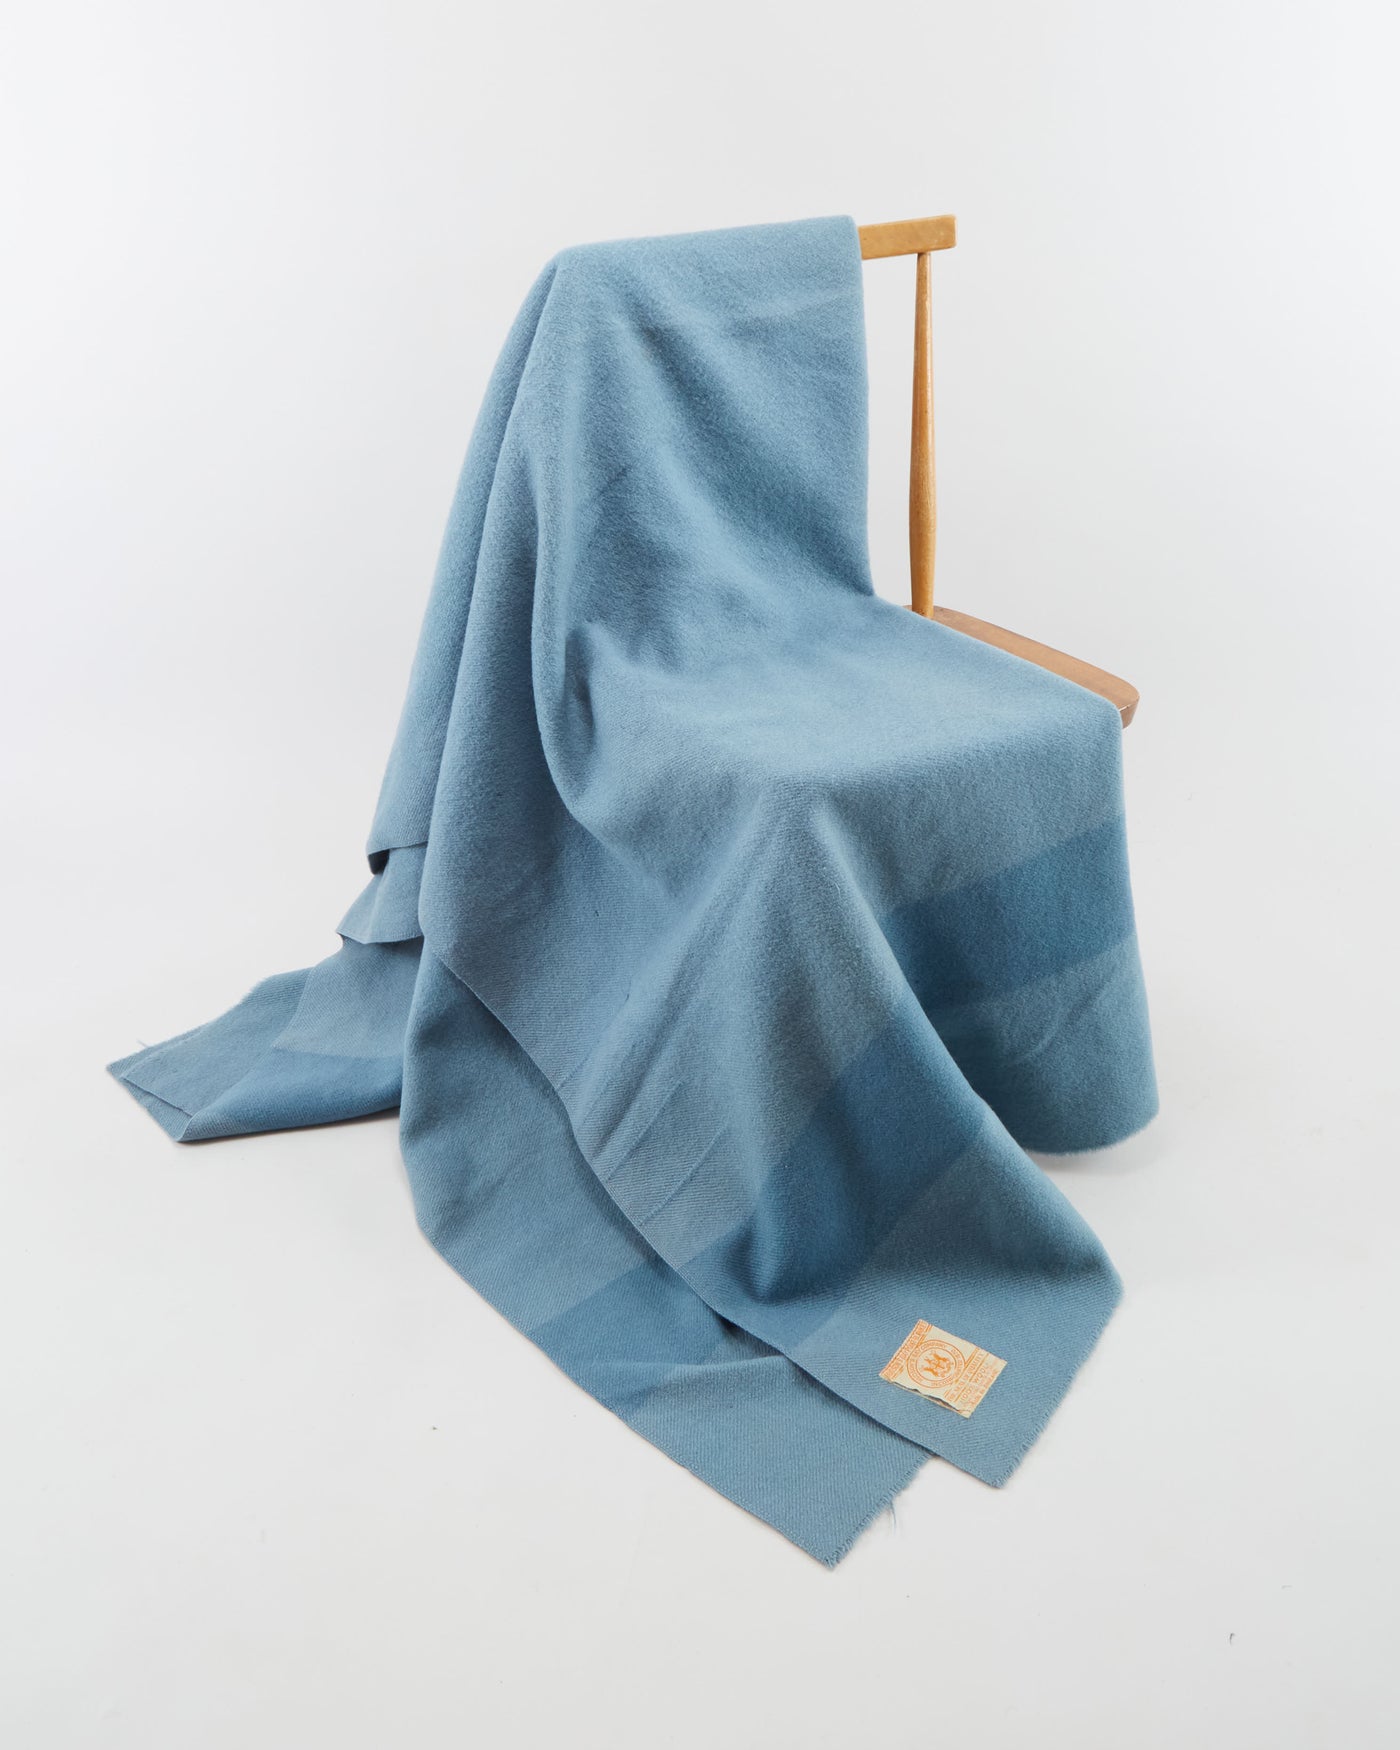 Vintage 1950s Hudson's Bay Blue 4 Point Wool Blanket